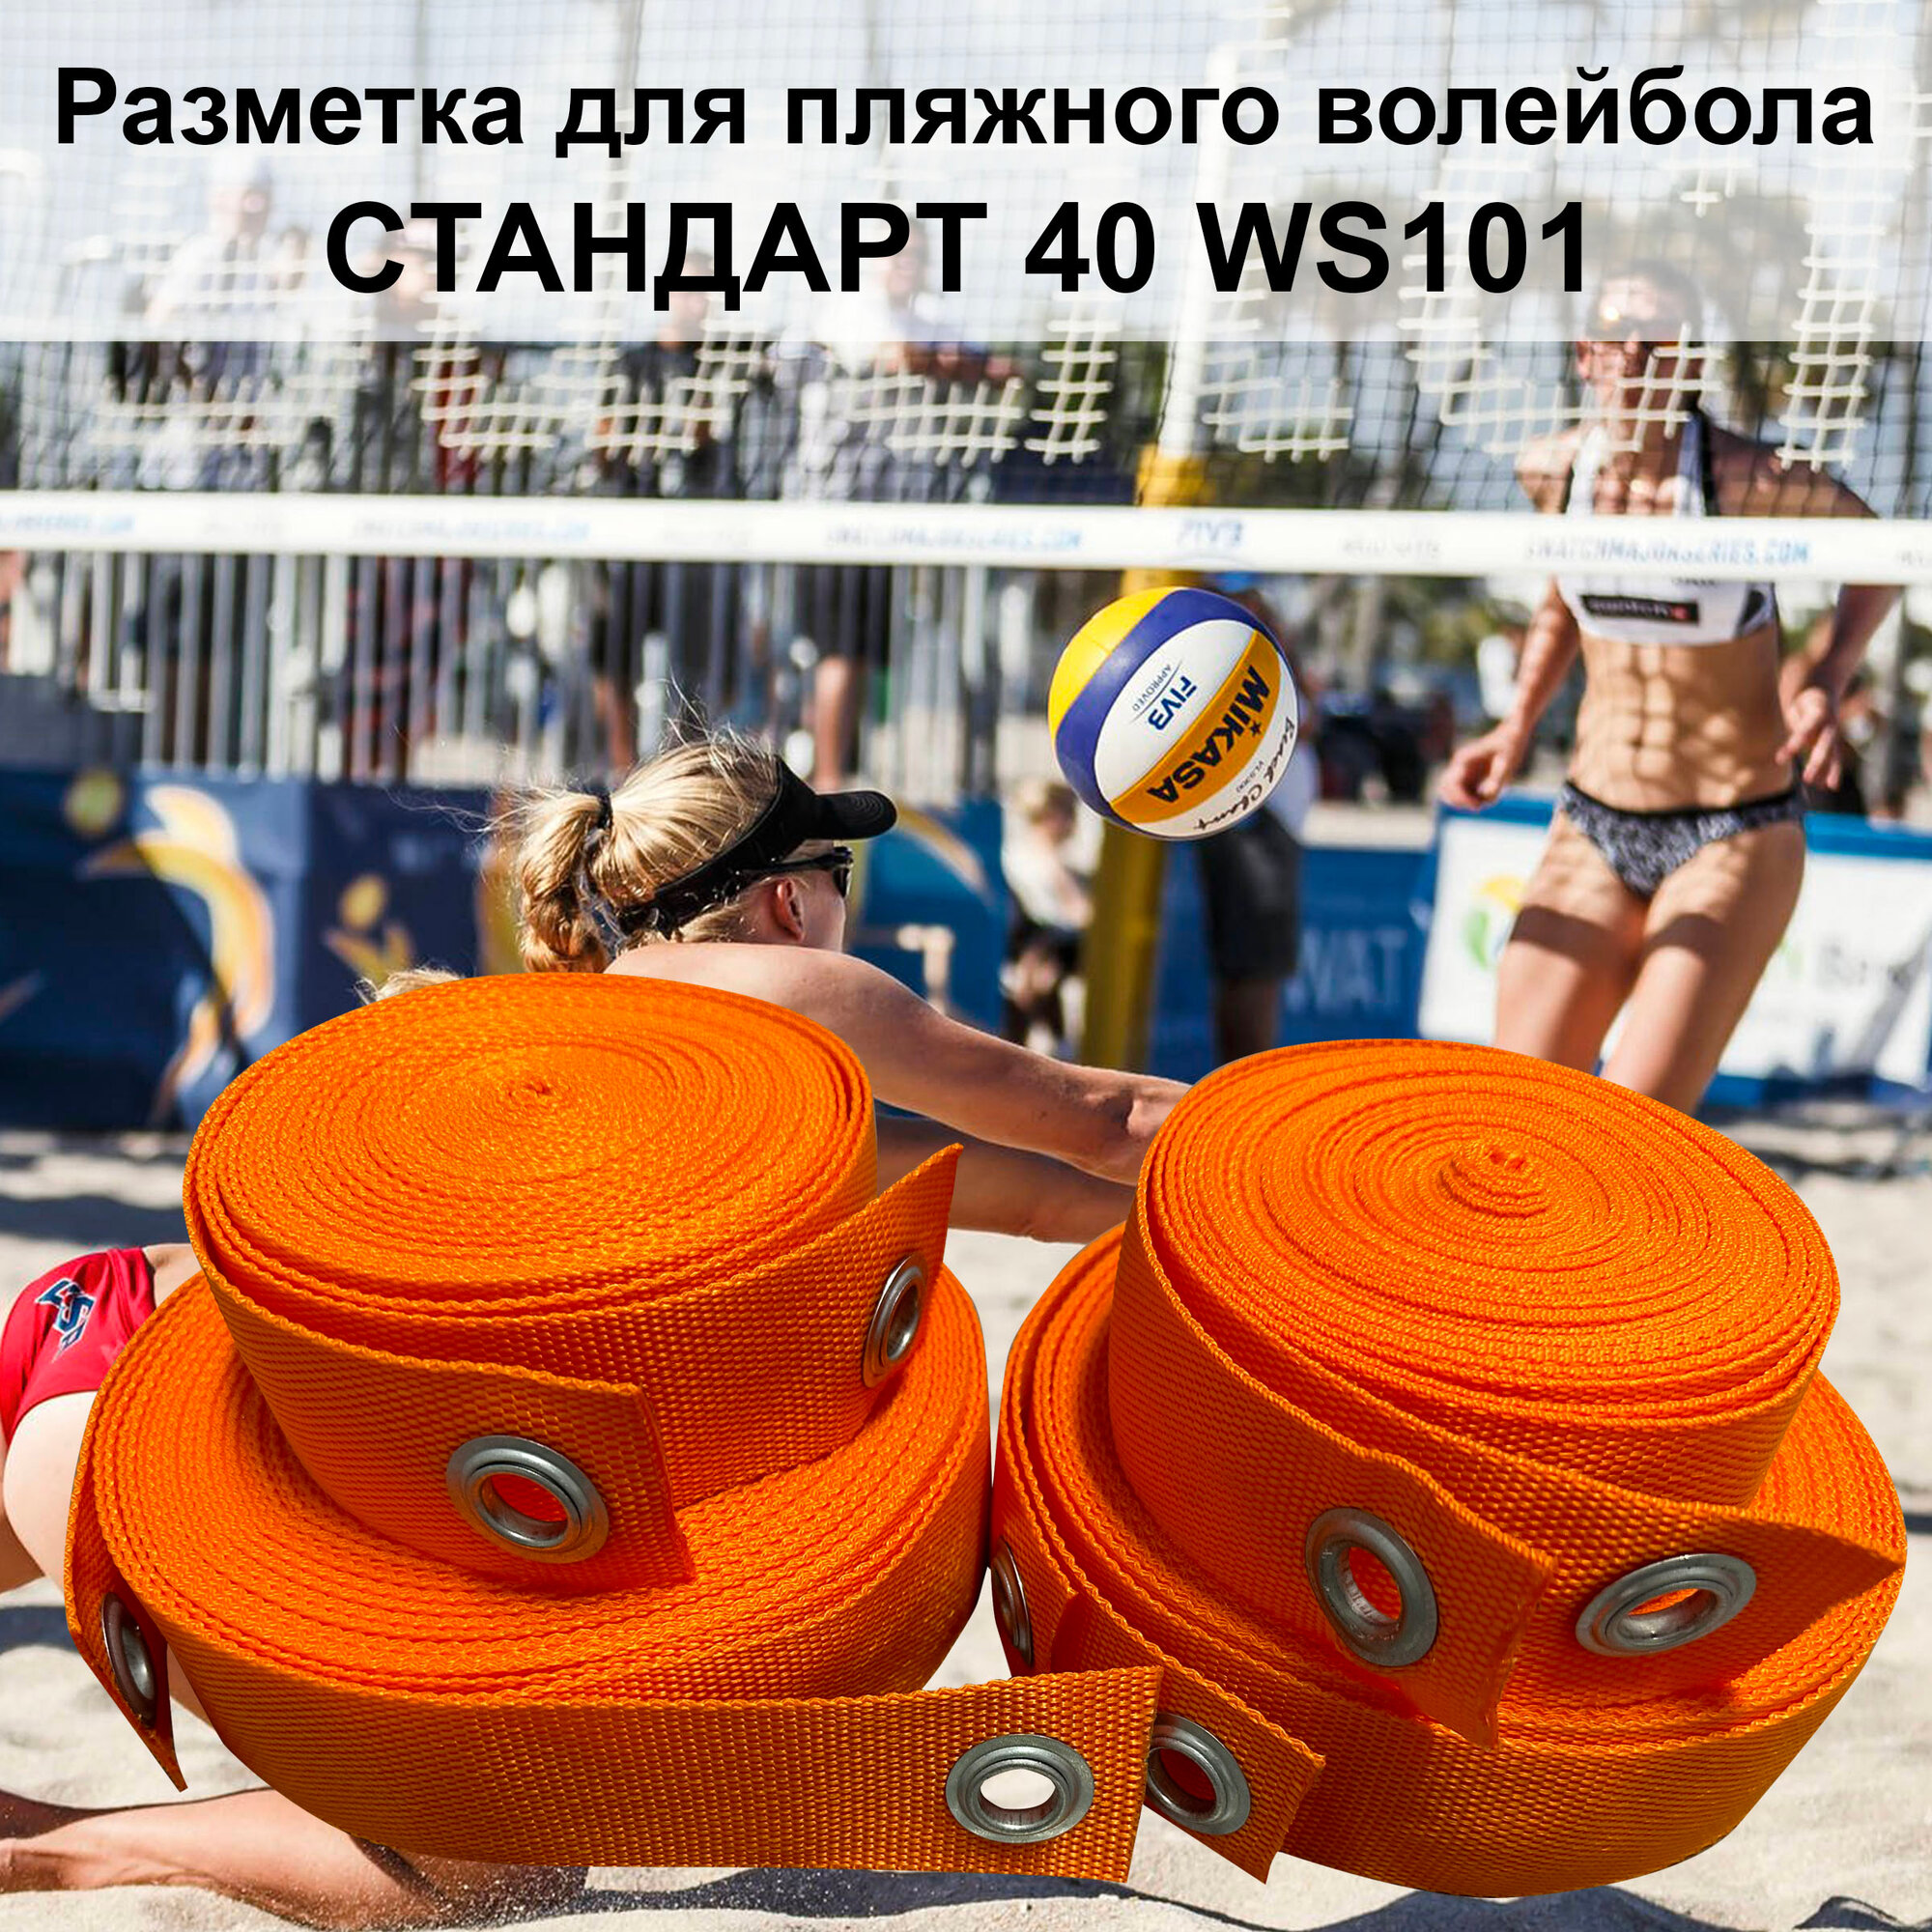 Разметка для пляжного волейбола СТАНДАРТ-40 WS101 оранжевая